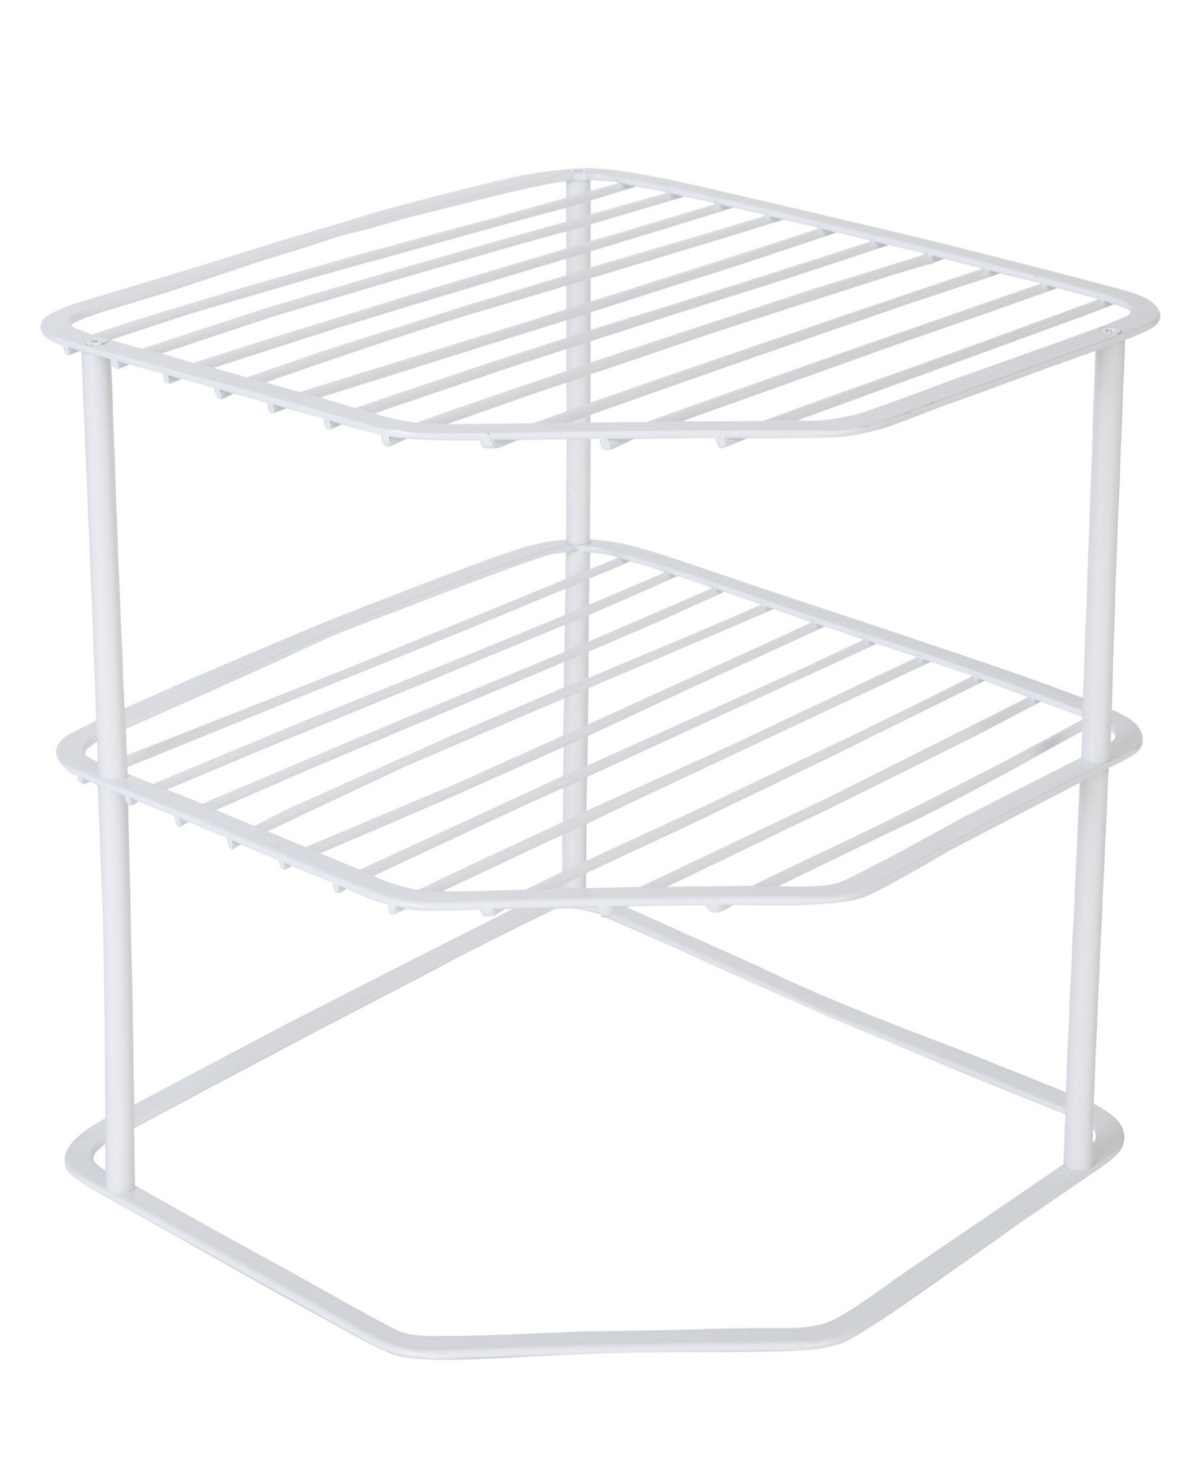 3-Tier Kitchen Corner Shelf Rack, 9" x 7.75" - White